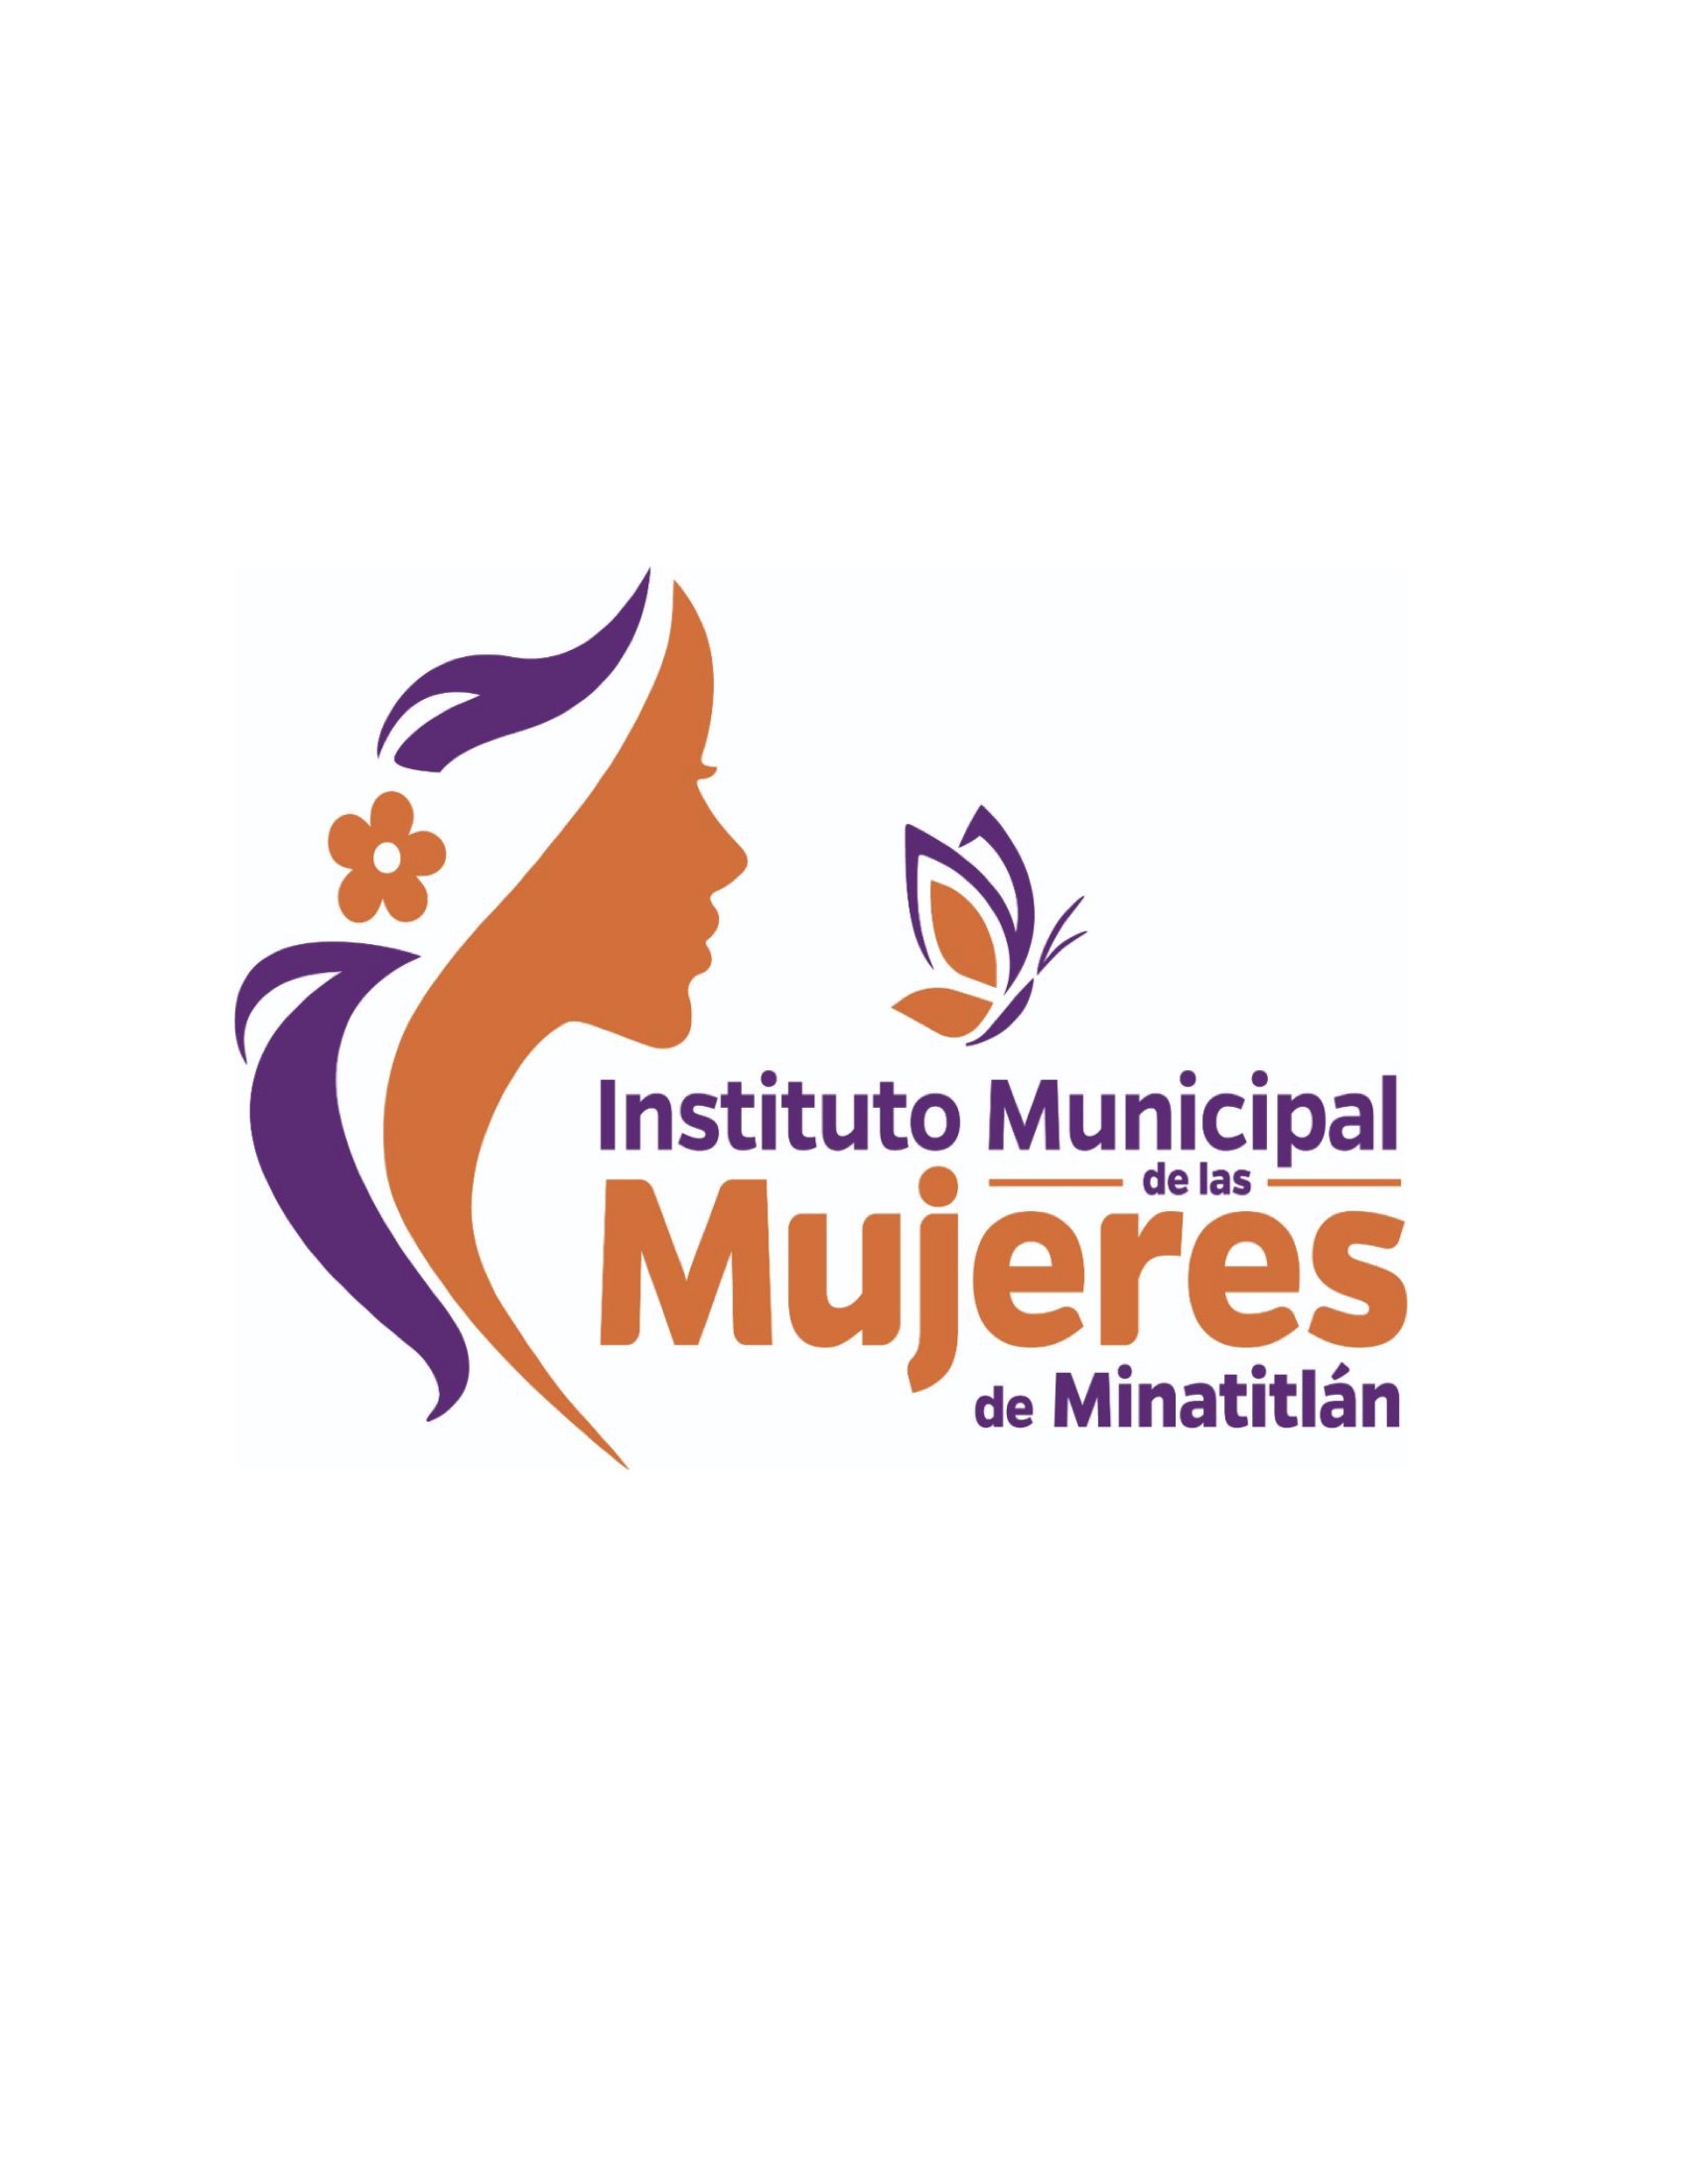 Instituto Municipal de las Mujeres de Minatitlán